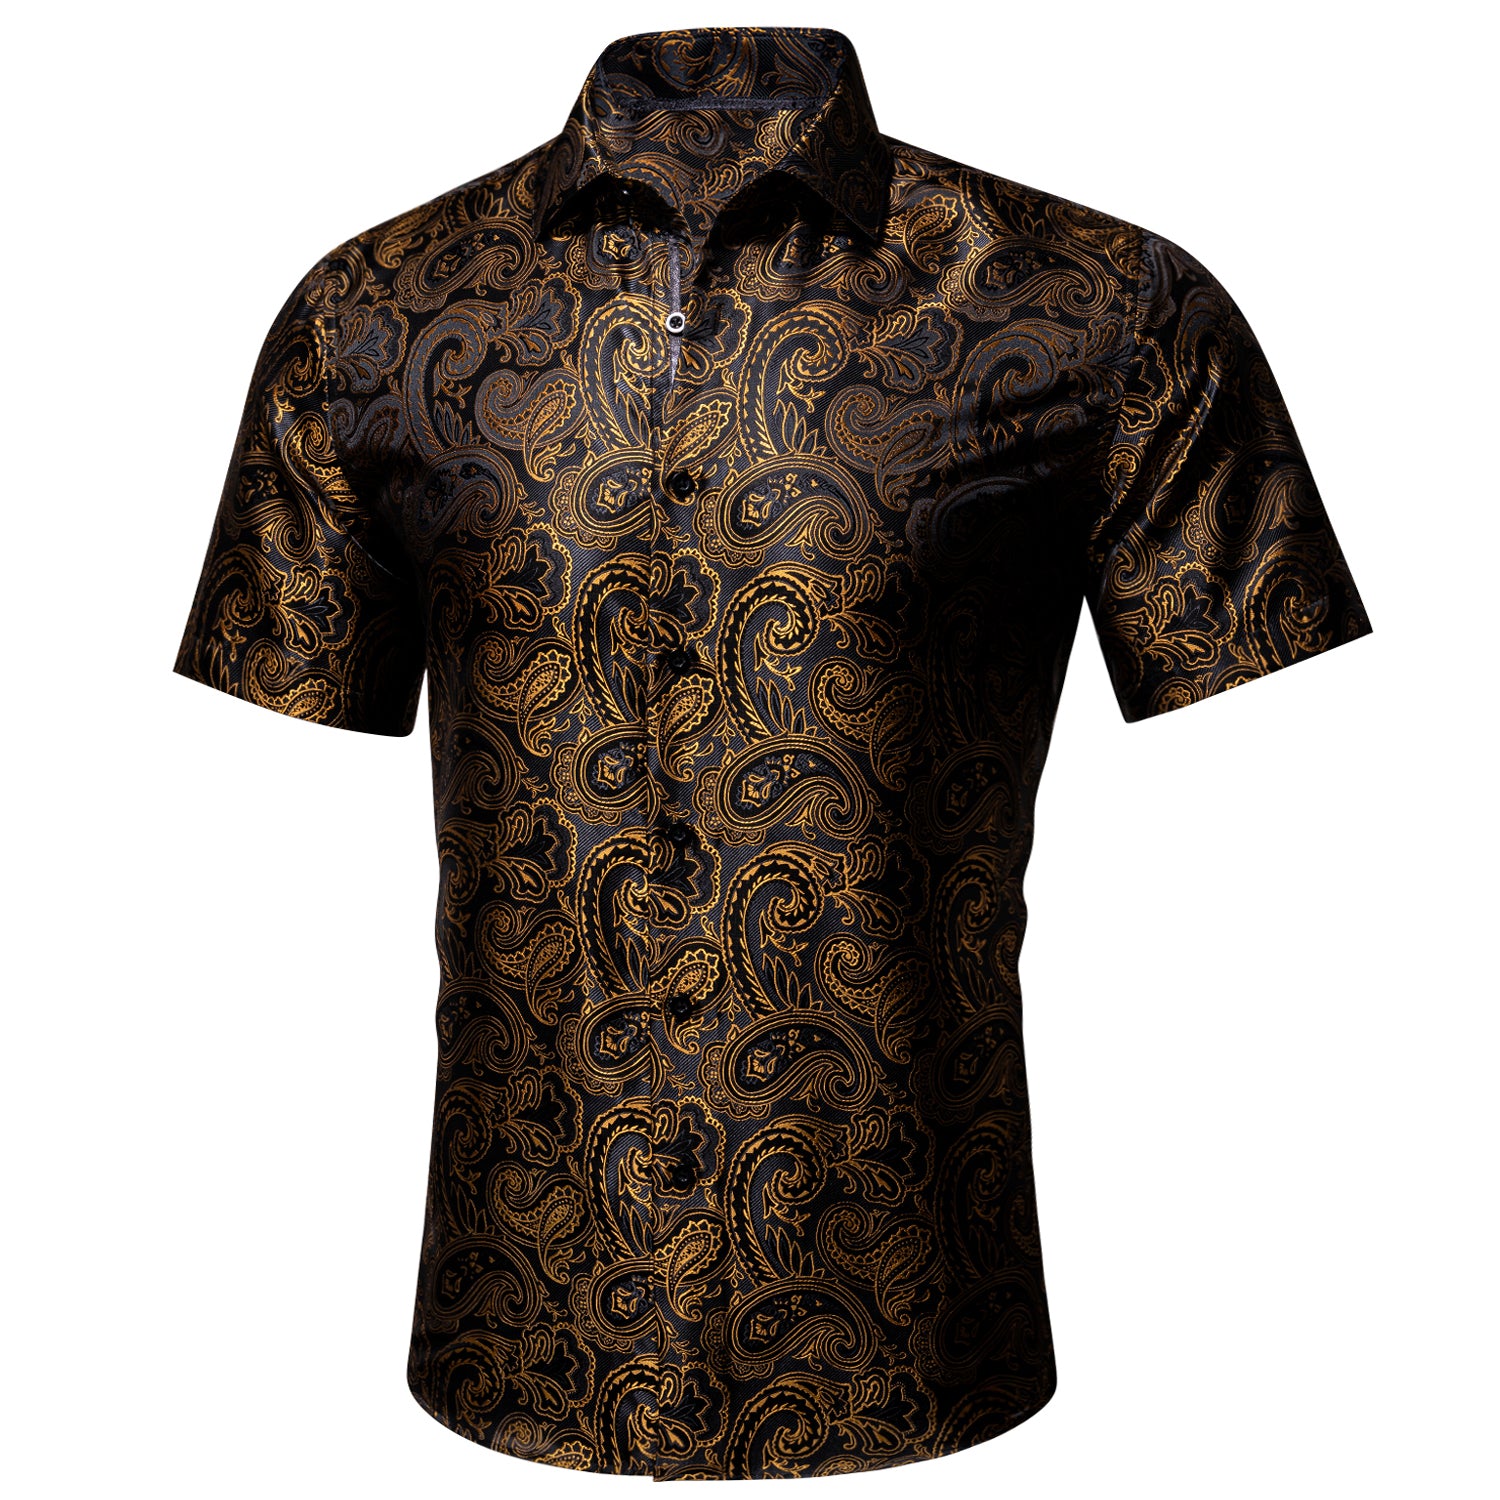 Barry.wang Men's Shirt Black Golden Silk Paisley Short Sleeve Shirt